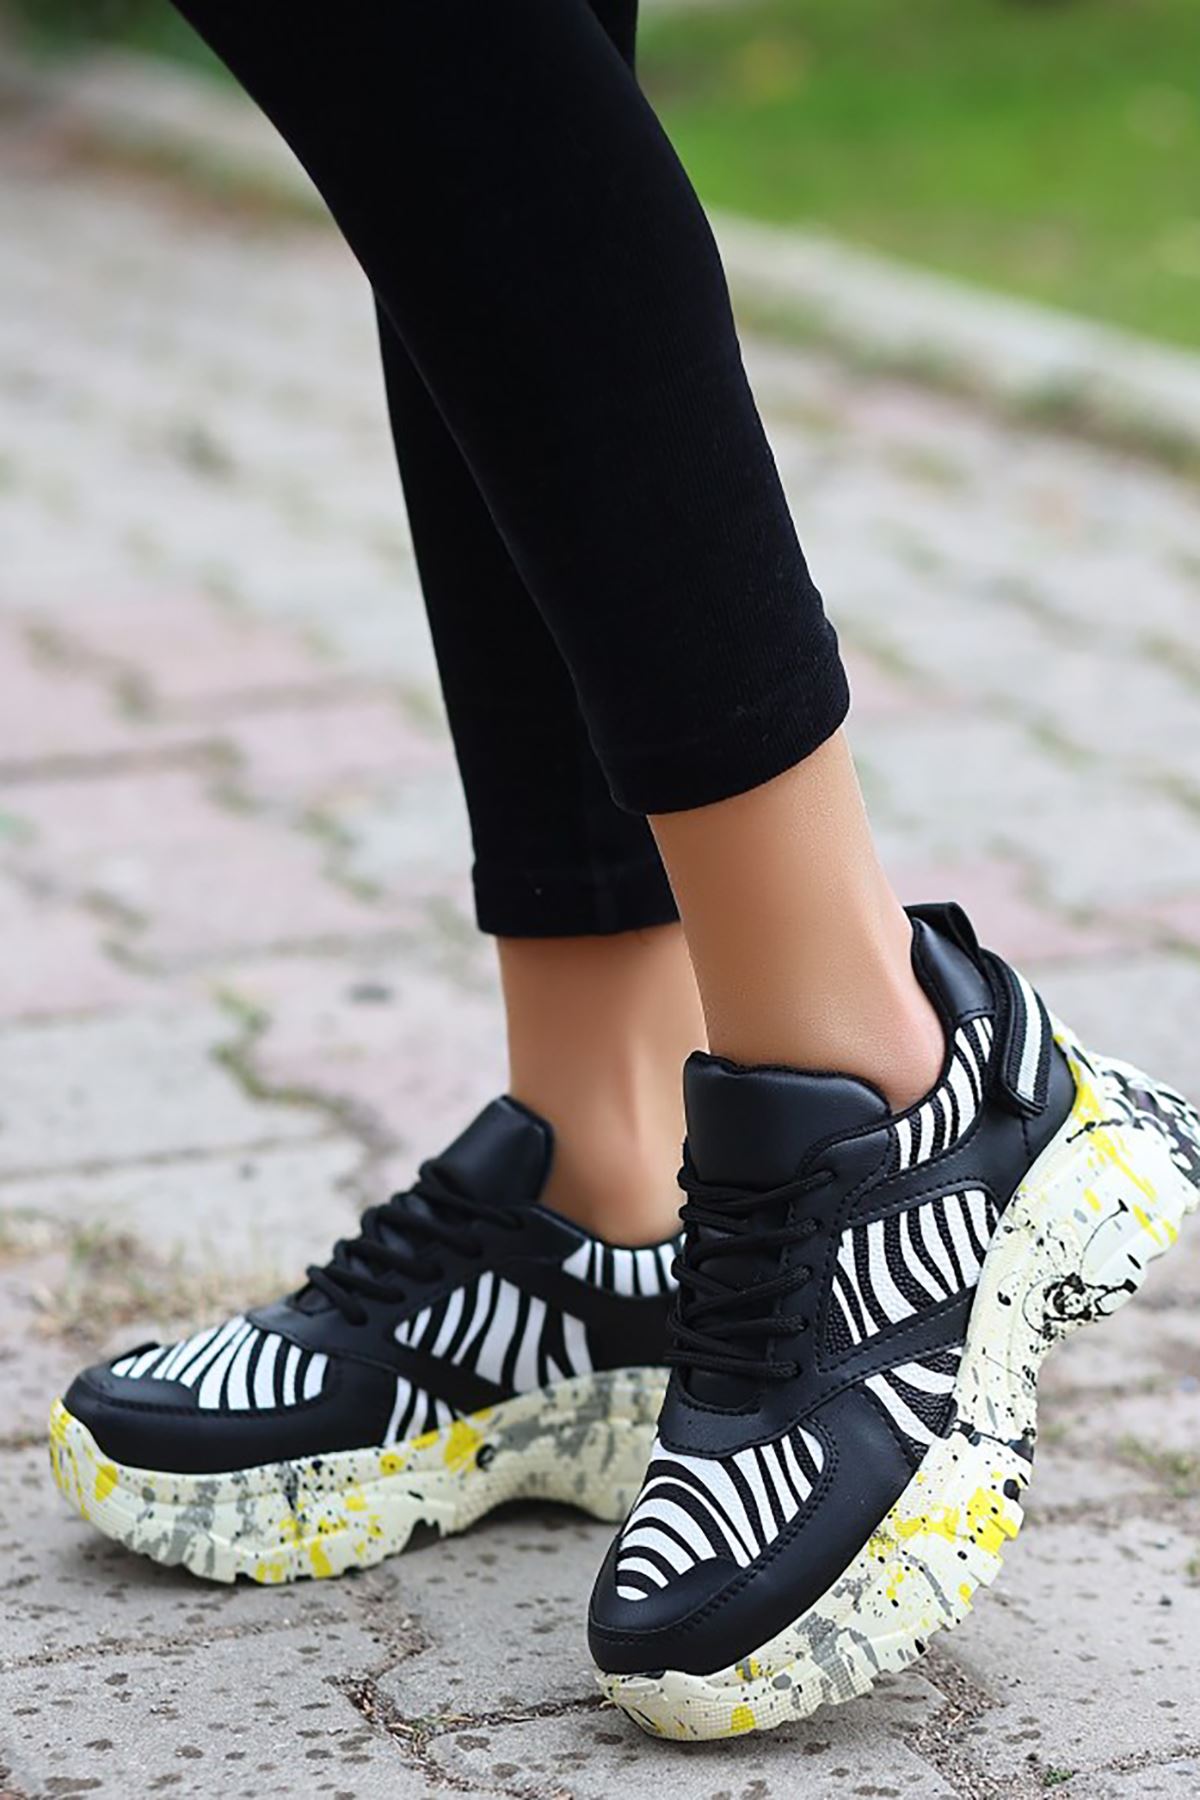 ERBFUNİE Siyah Leopar Desenli Deri Bayan Detaylı Bağcıklı Spor Ayakkabı